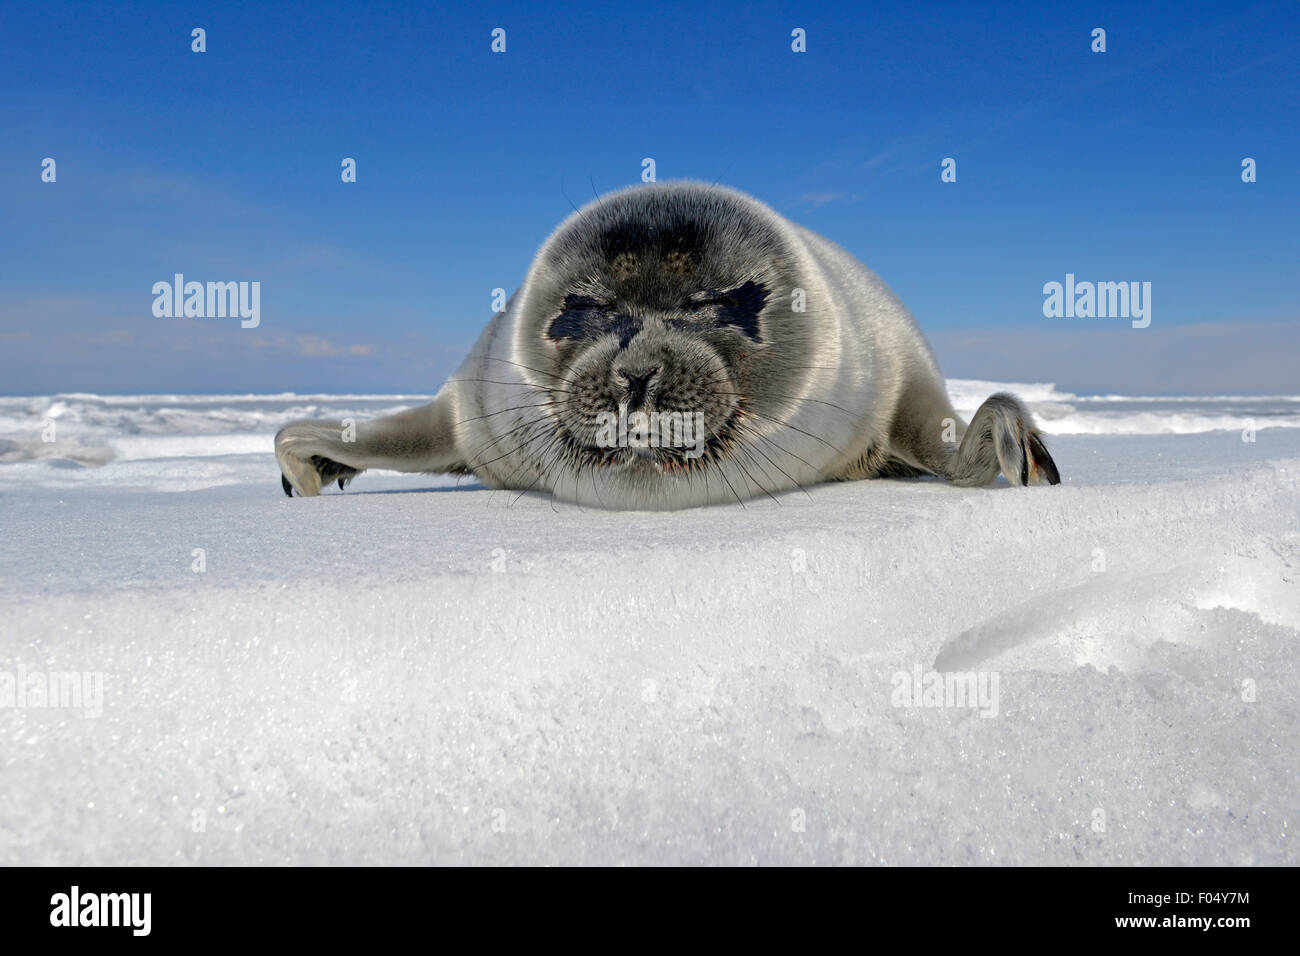 Baikal seal (Pusa sibirica, Phoca sibirica), les petits phoques d'eau douce, couché sur la glace, glace d'un lac Baikal, Sibérie, Russie Banque D'Images